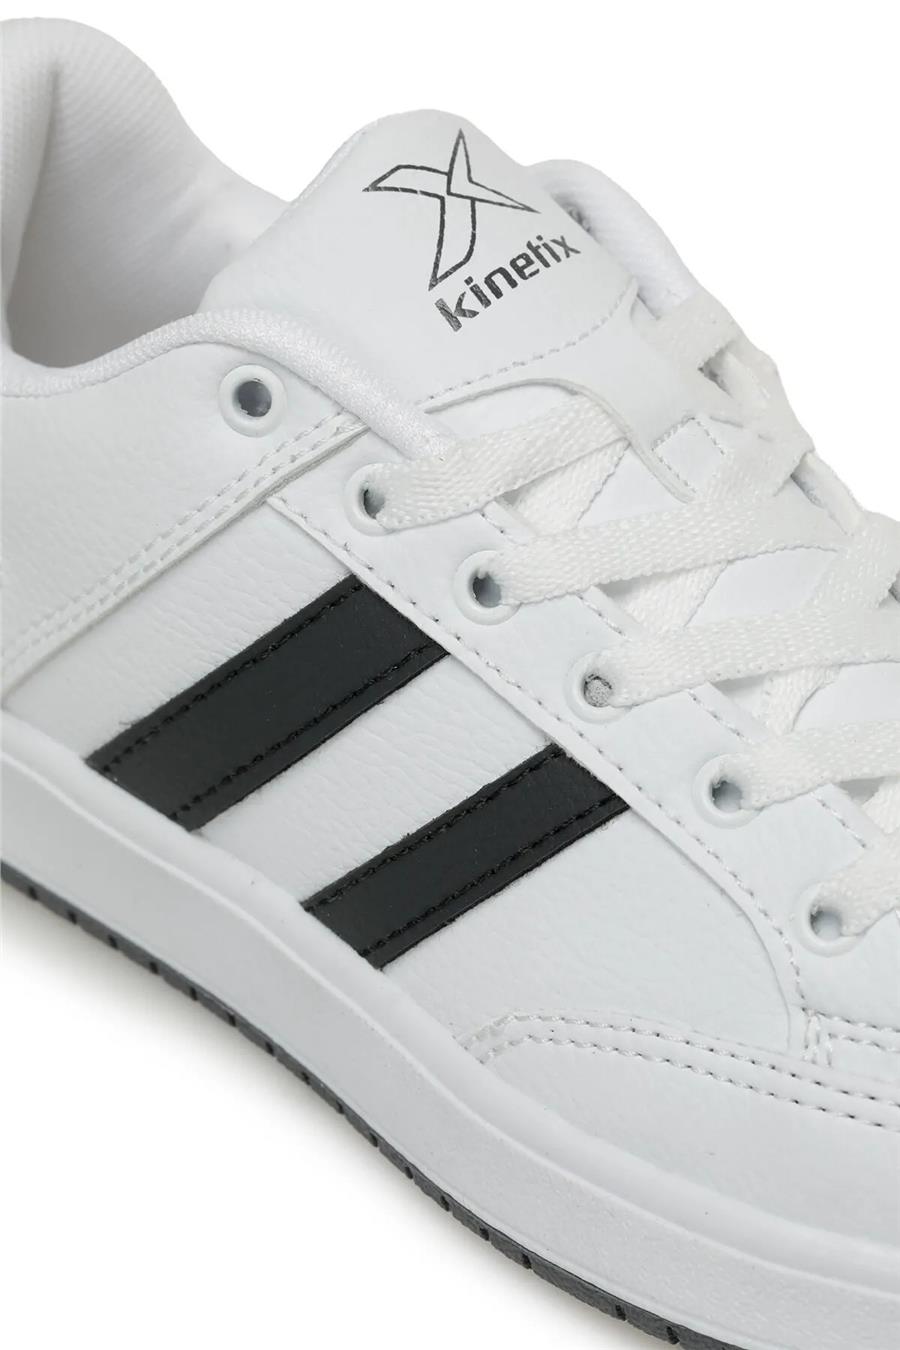 Kinetix Kort Pu 3Pr Beyaz Gri Erkek Sneaker Ayakkabı